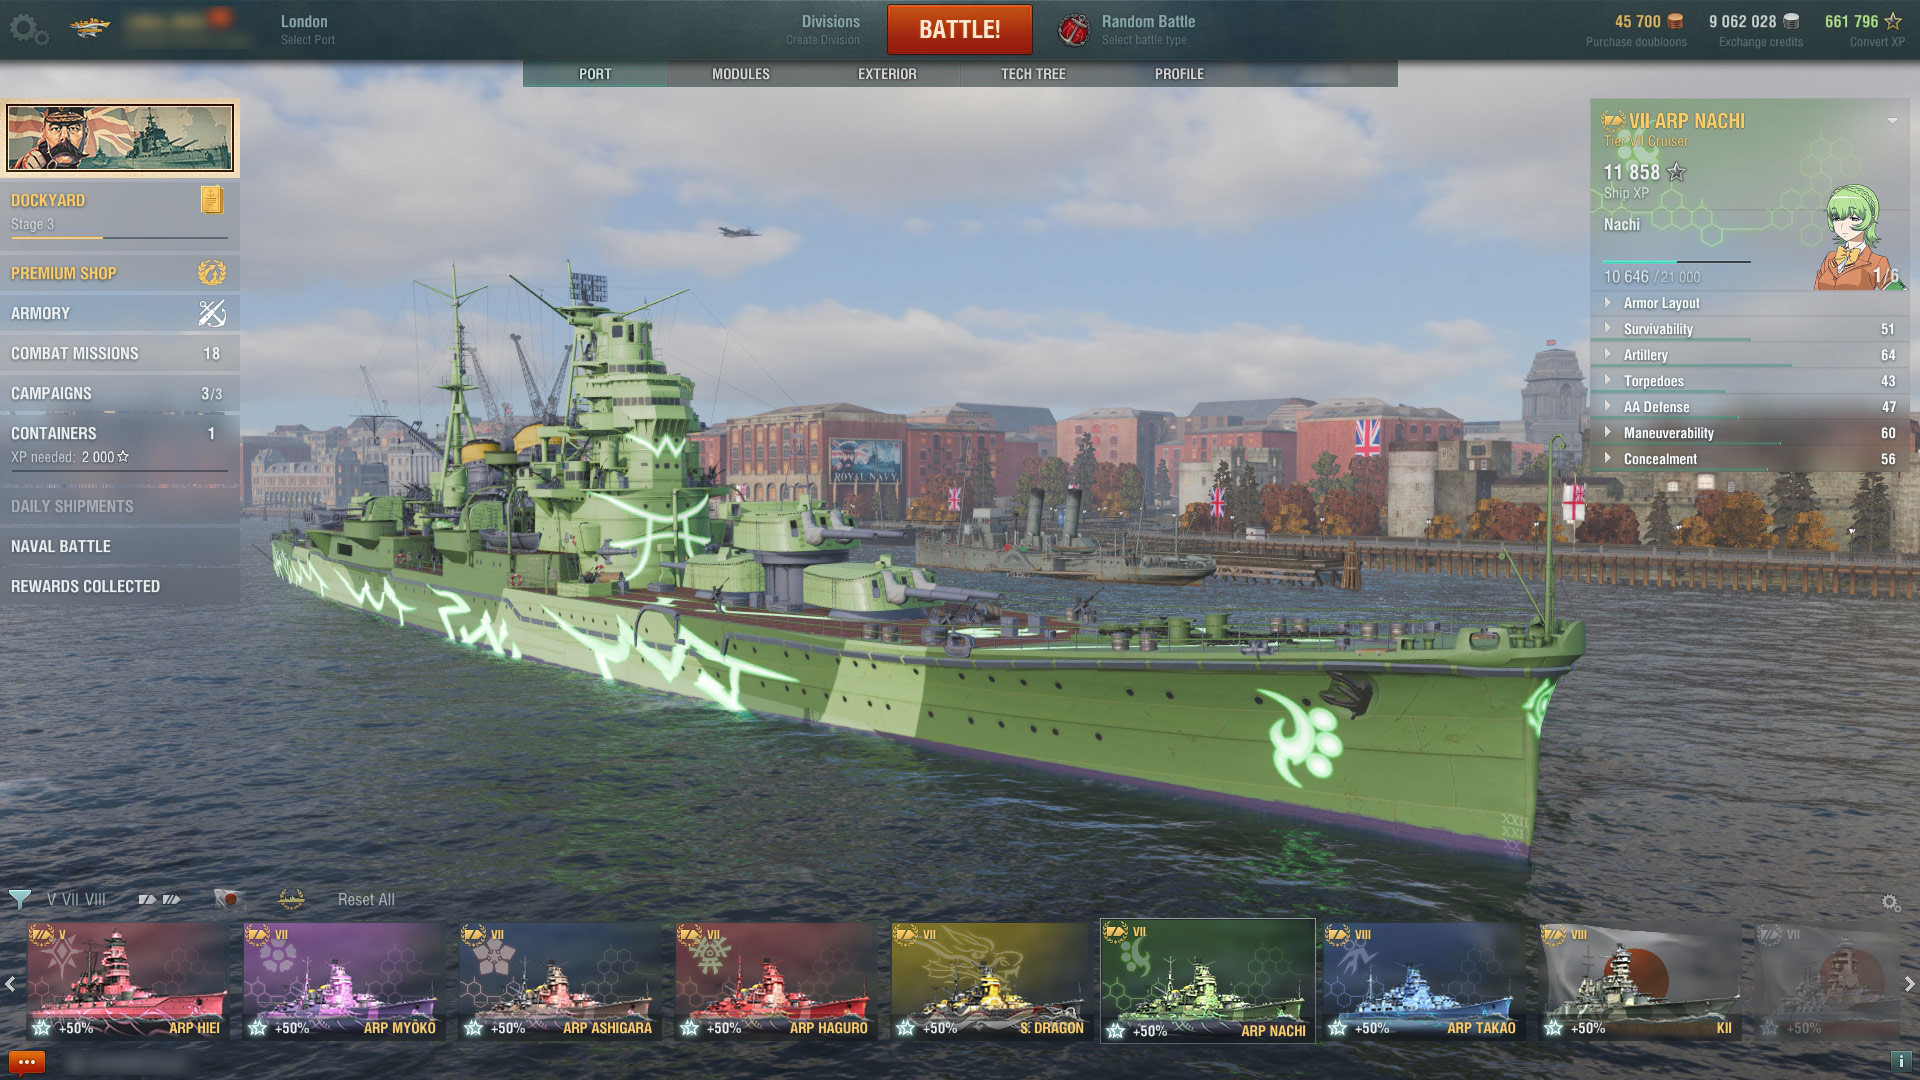 World of Warships — ARP Nachi Featured Screenshot #1